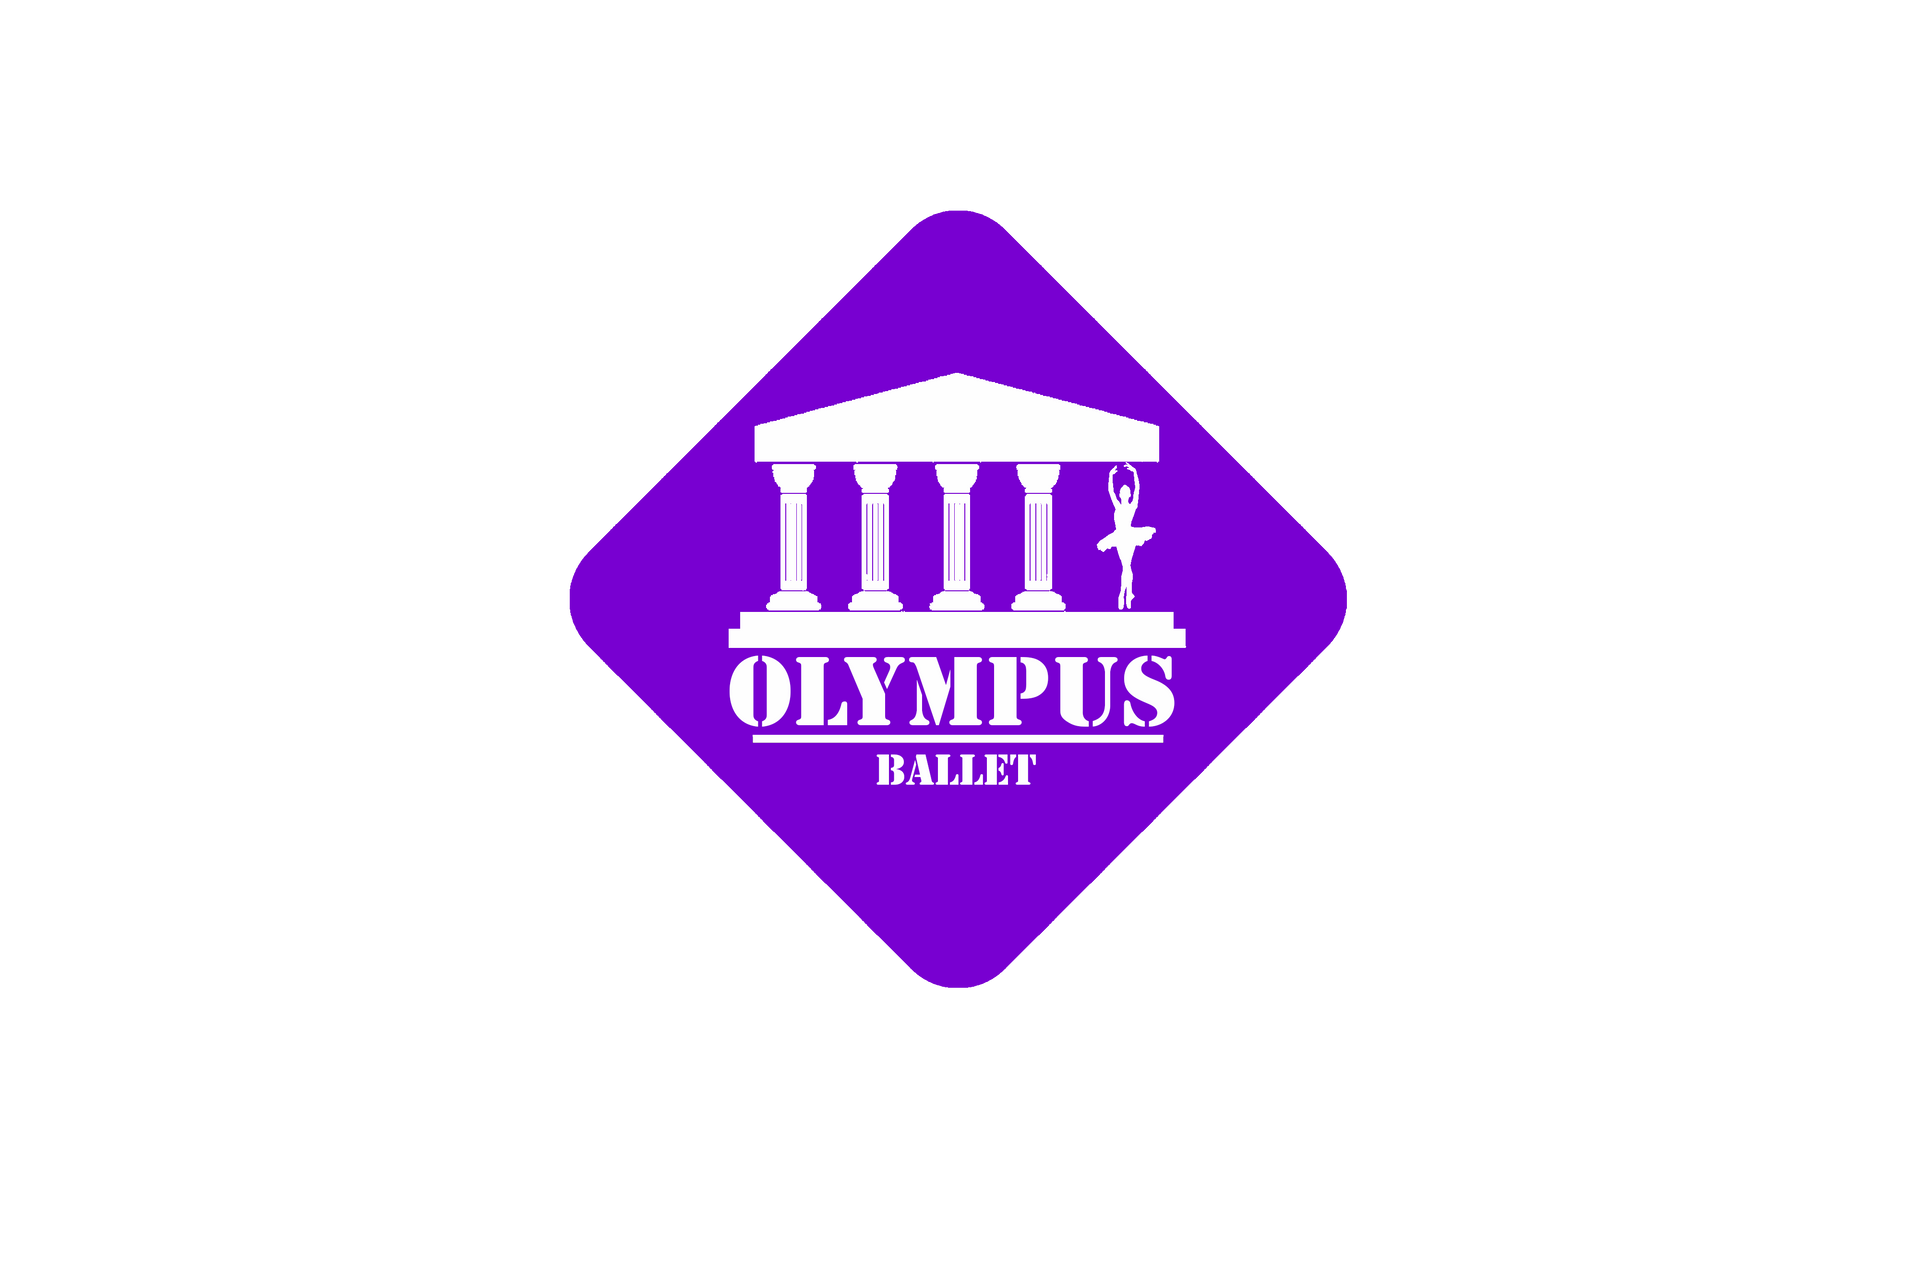 Scuola di Danza Olympus Ballet - LOGO